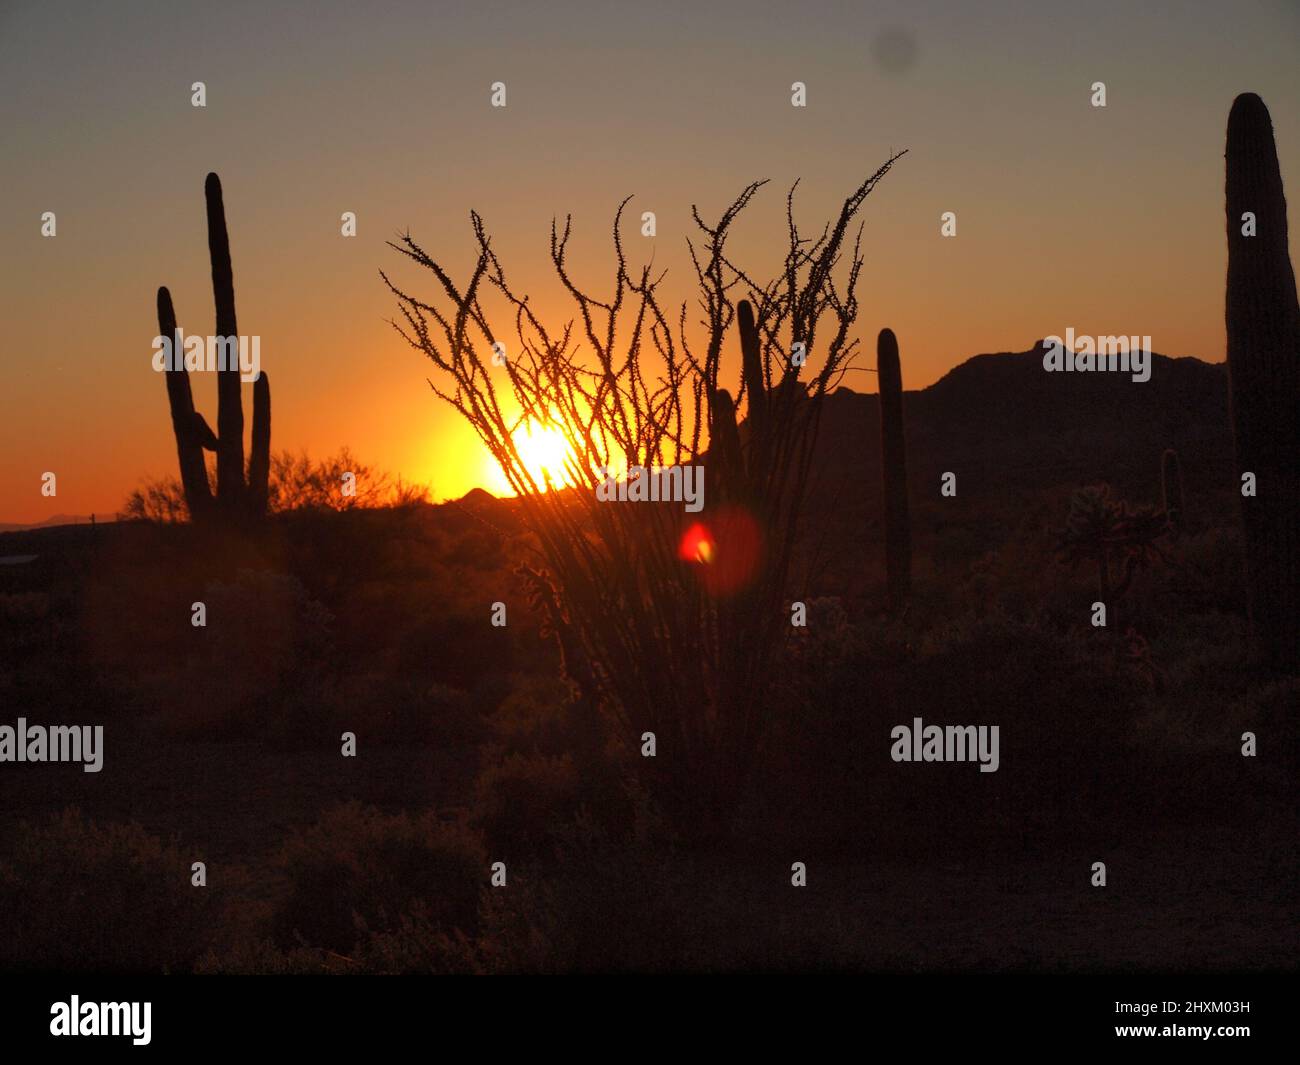 Immagini del tramonto a Superstition Mountain in Arizona e dintorni. Il sole che tramonta bagna la zona in tonalità dorate di rosso. Foto Stock